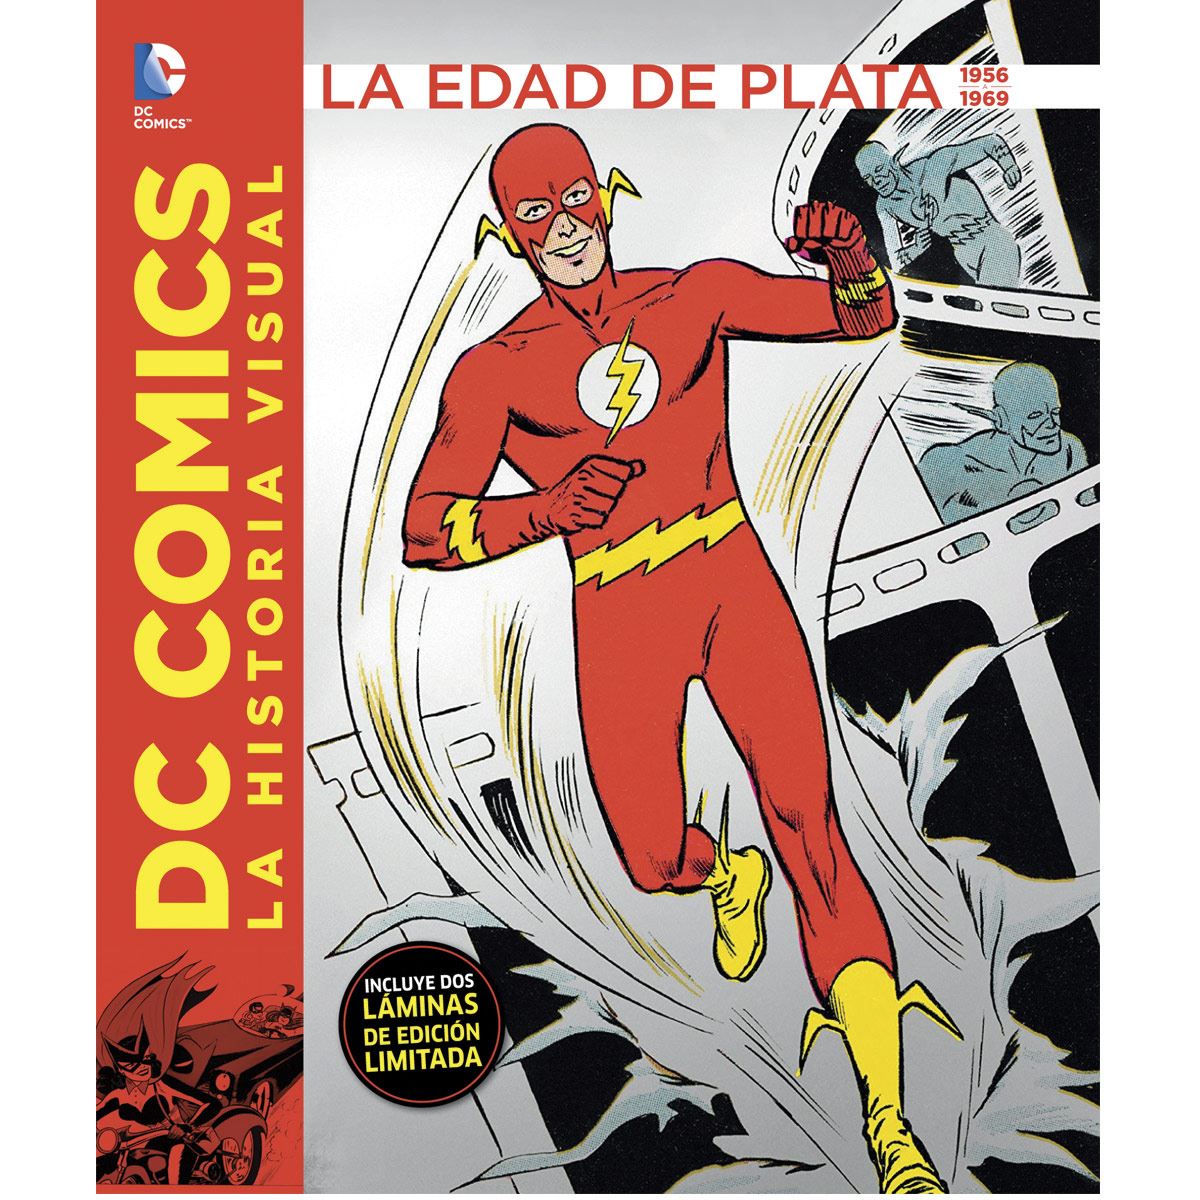 Dc Comics: La historia visual - La edad de plata 1956 a 1969